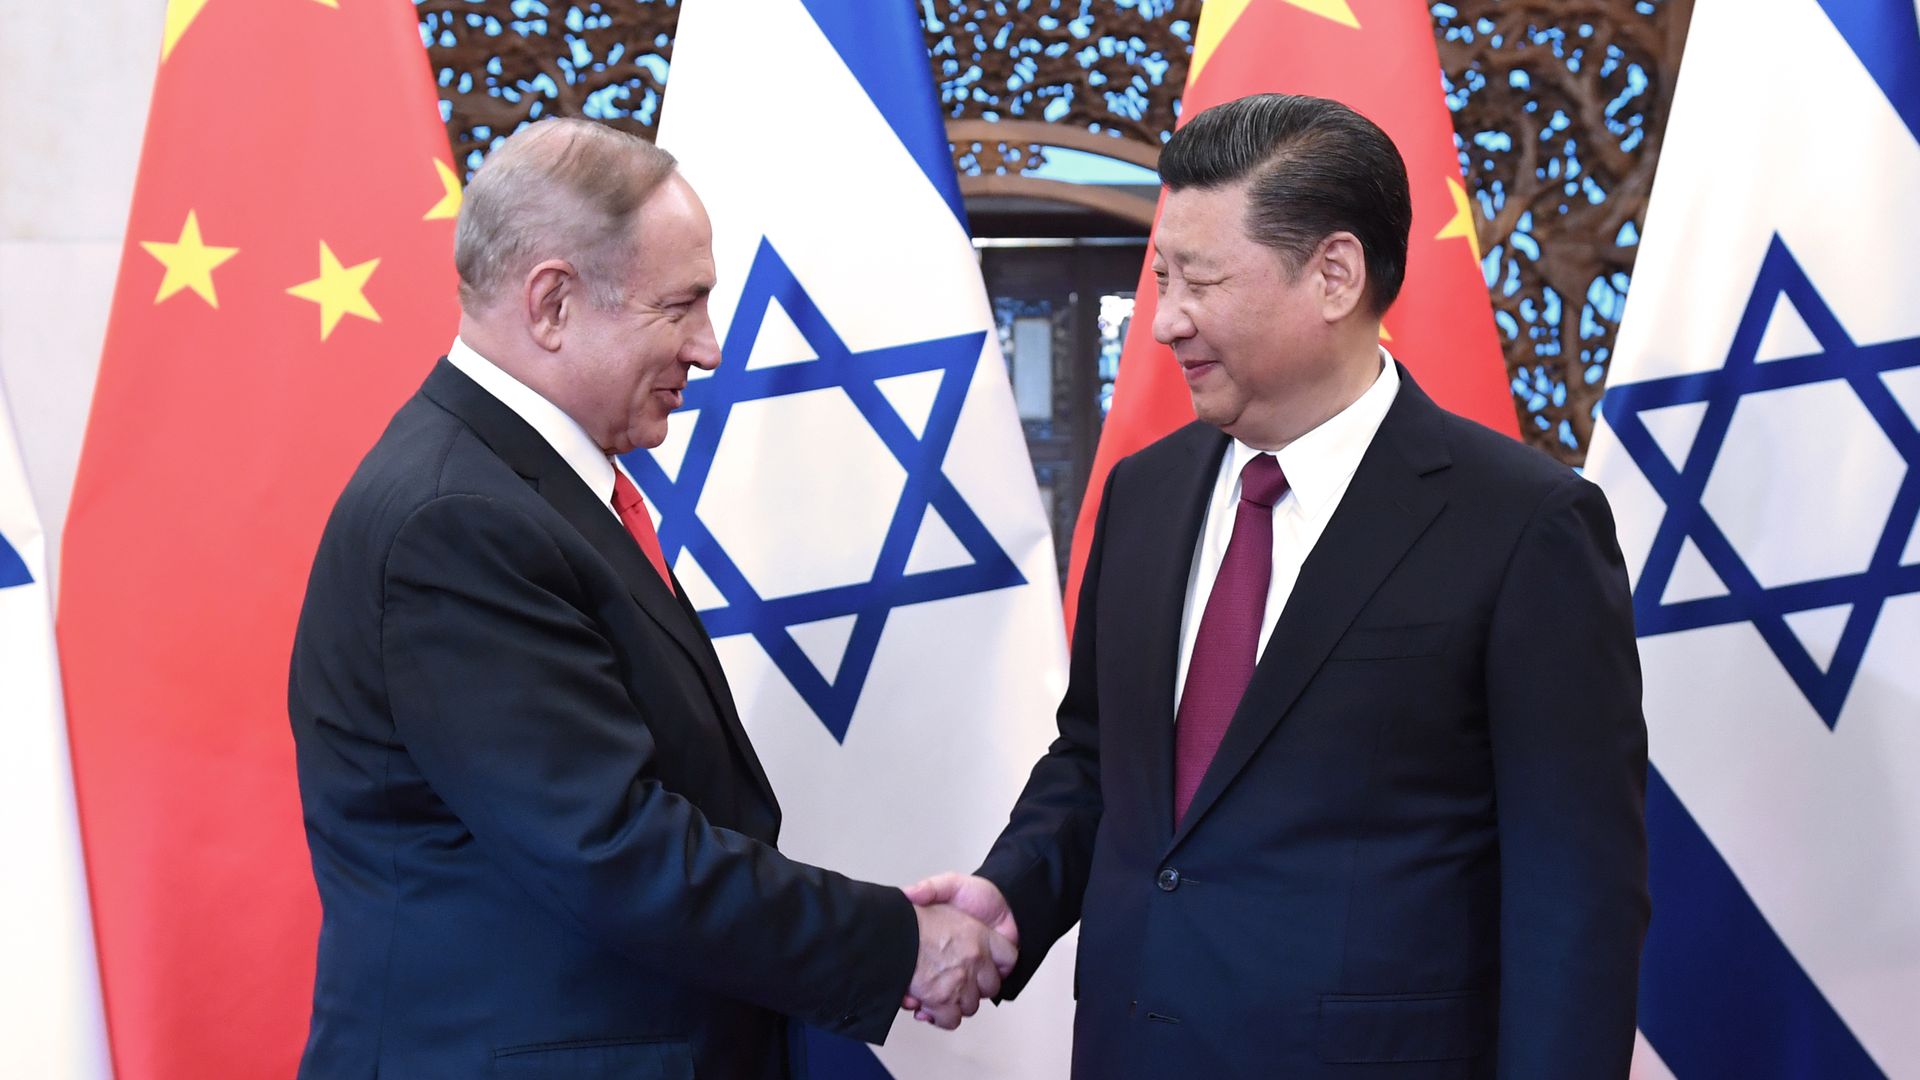 Netanyahu and Xi